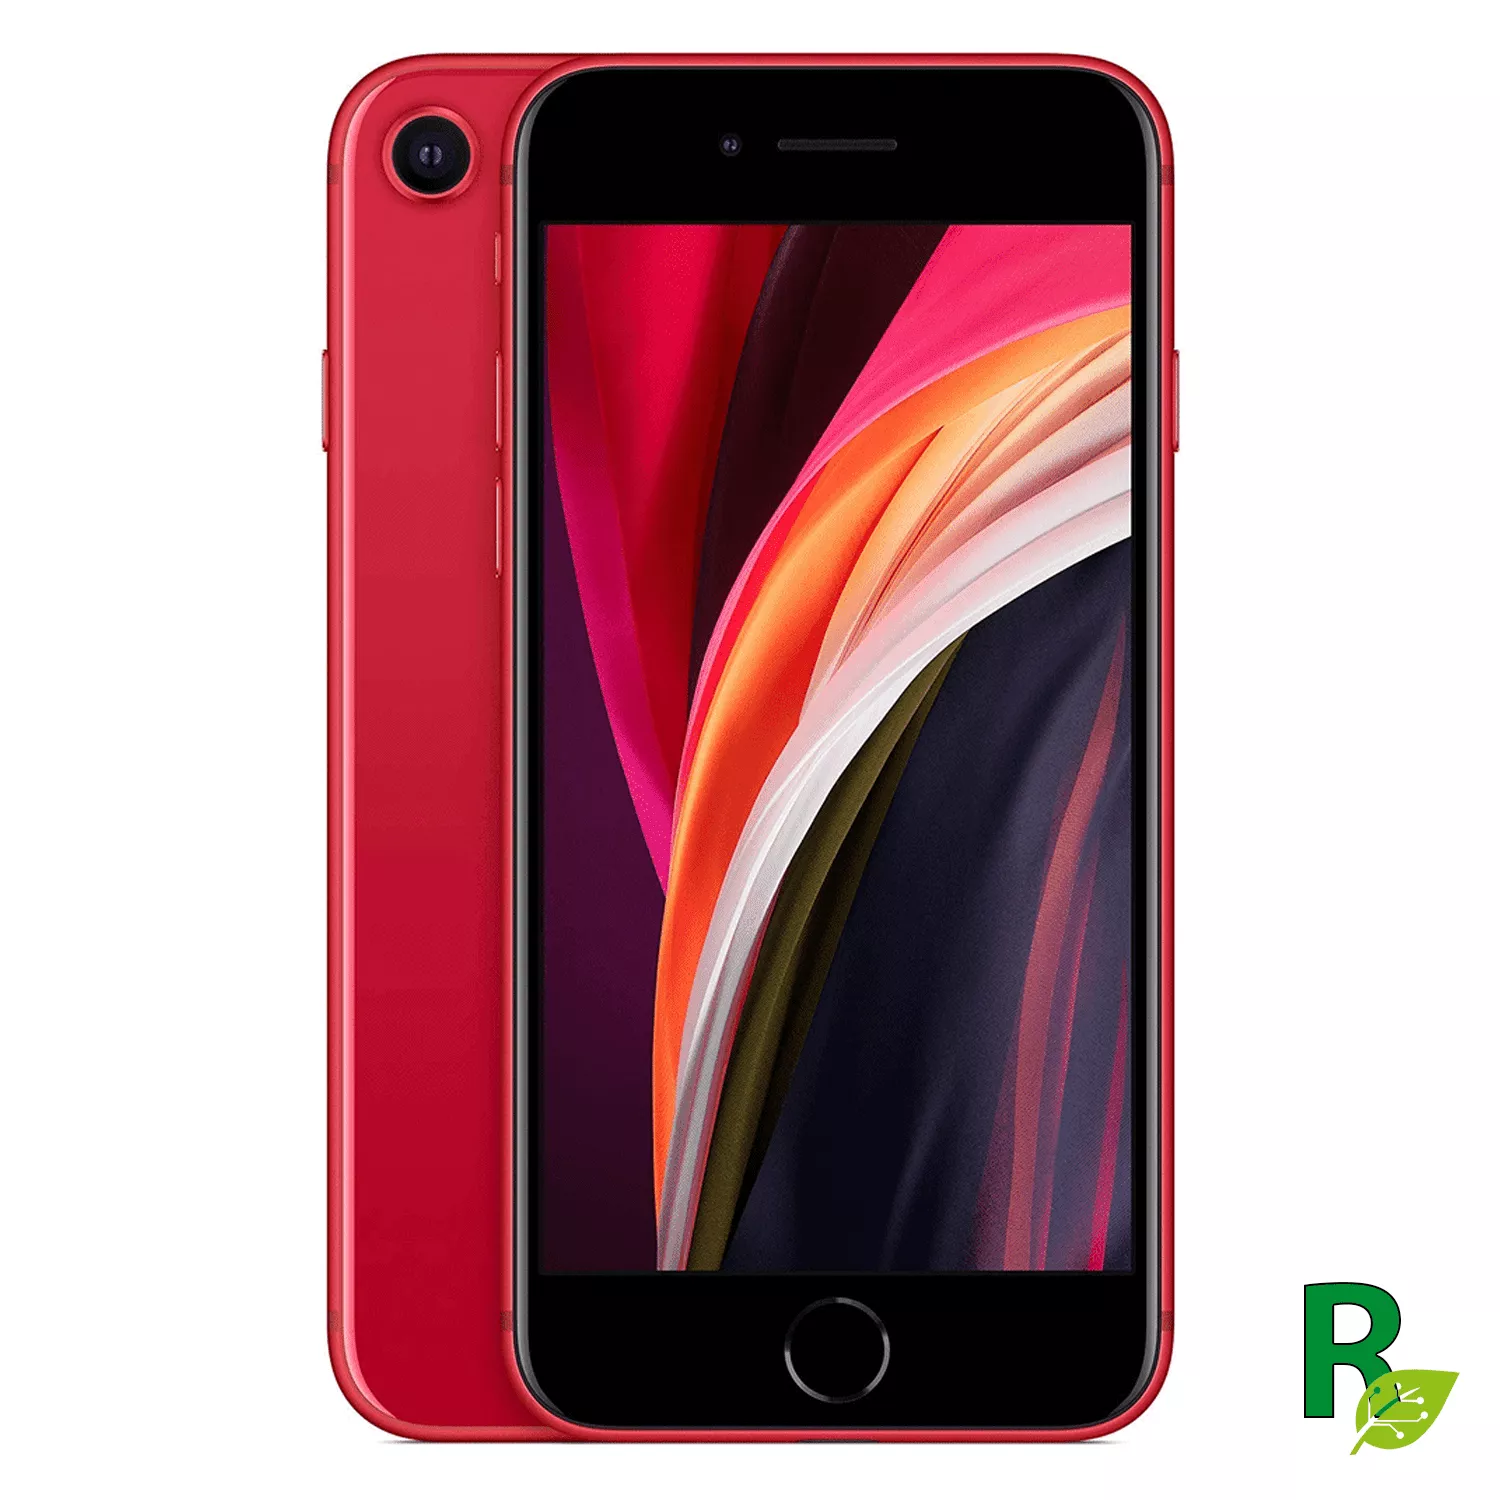 Celular seminuevo iPhone SE 128GB - Rojo - SE2NGENRED128AB - Cat. AB